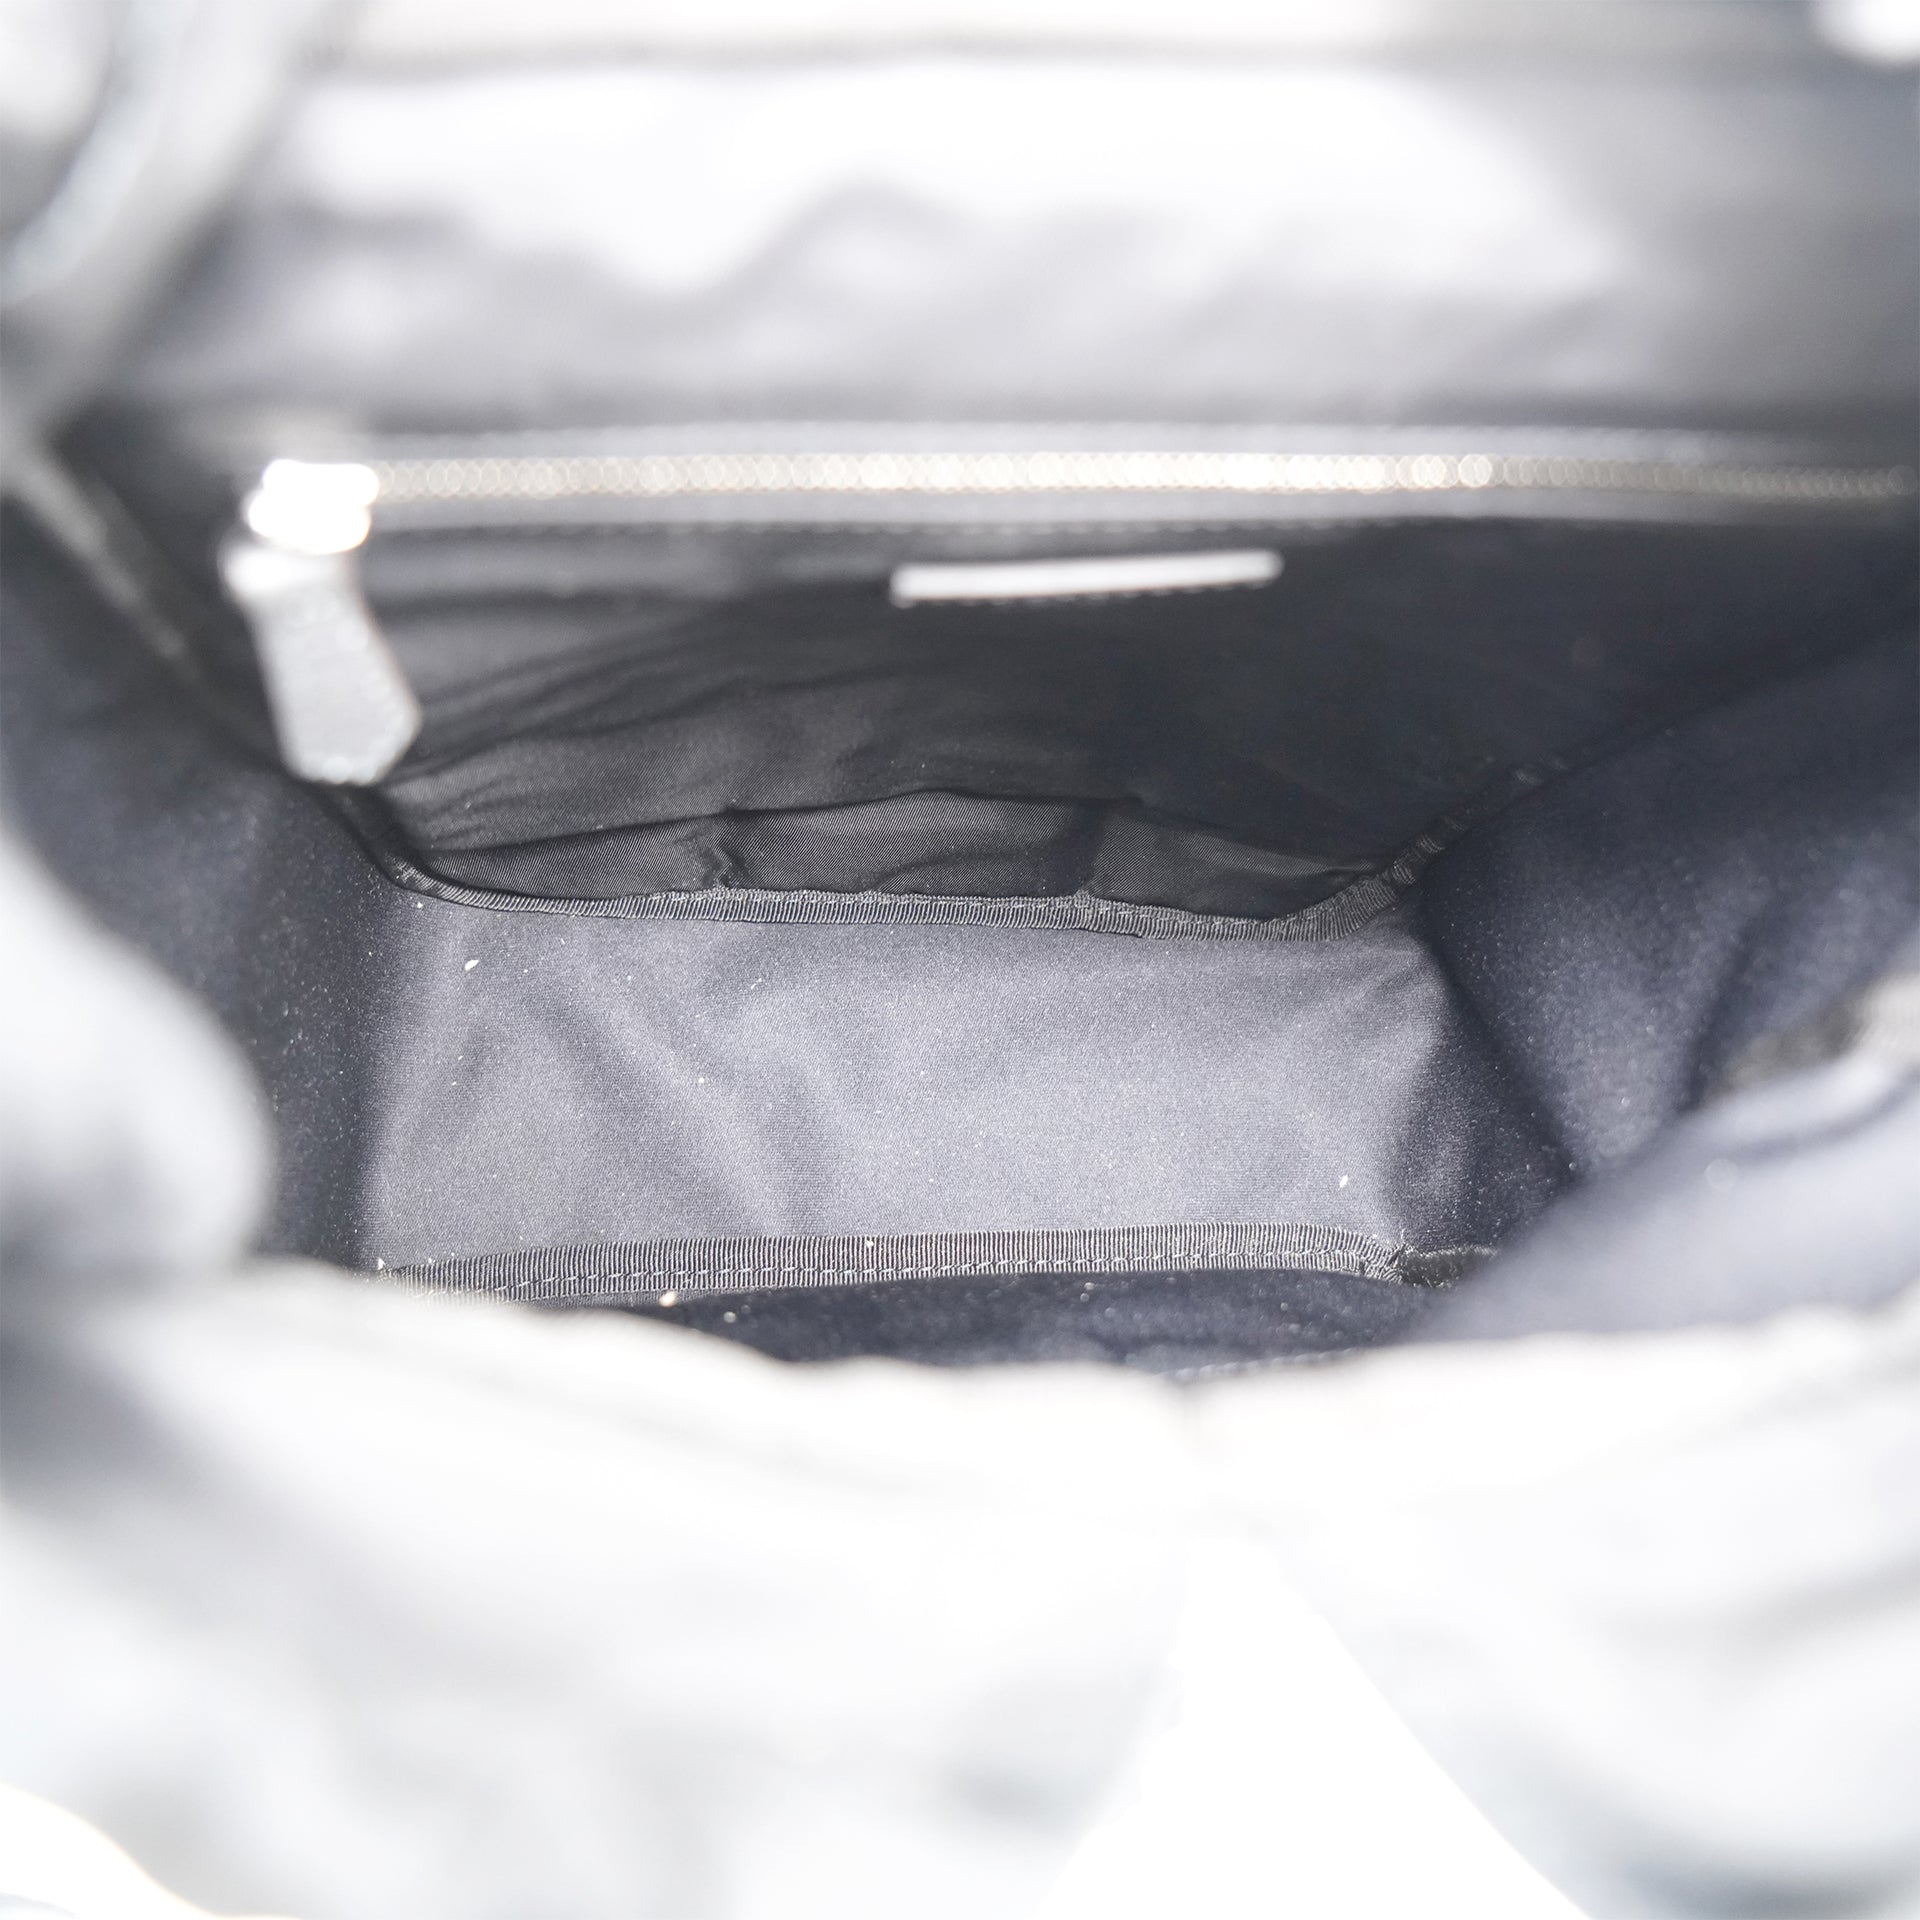 Fendiness Small Belt Backpack